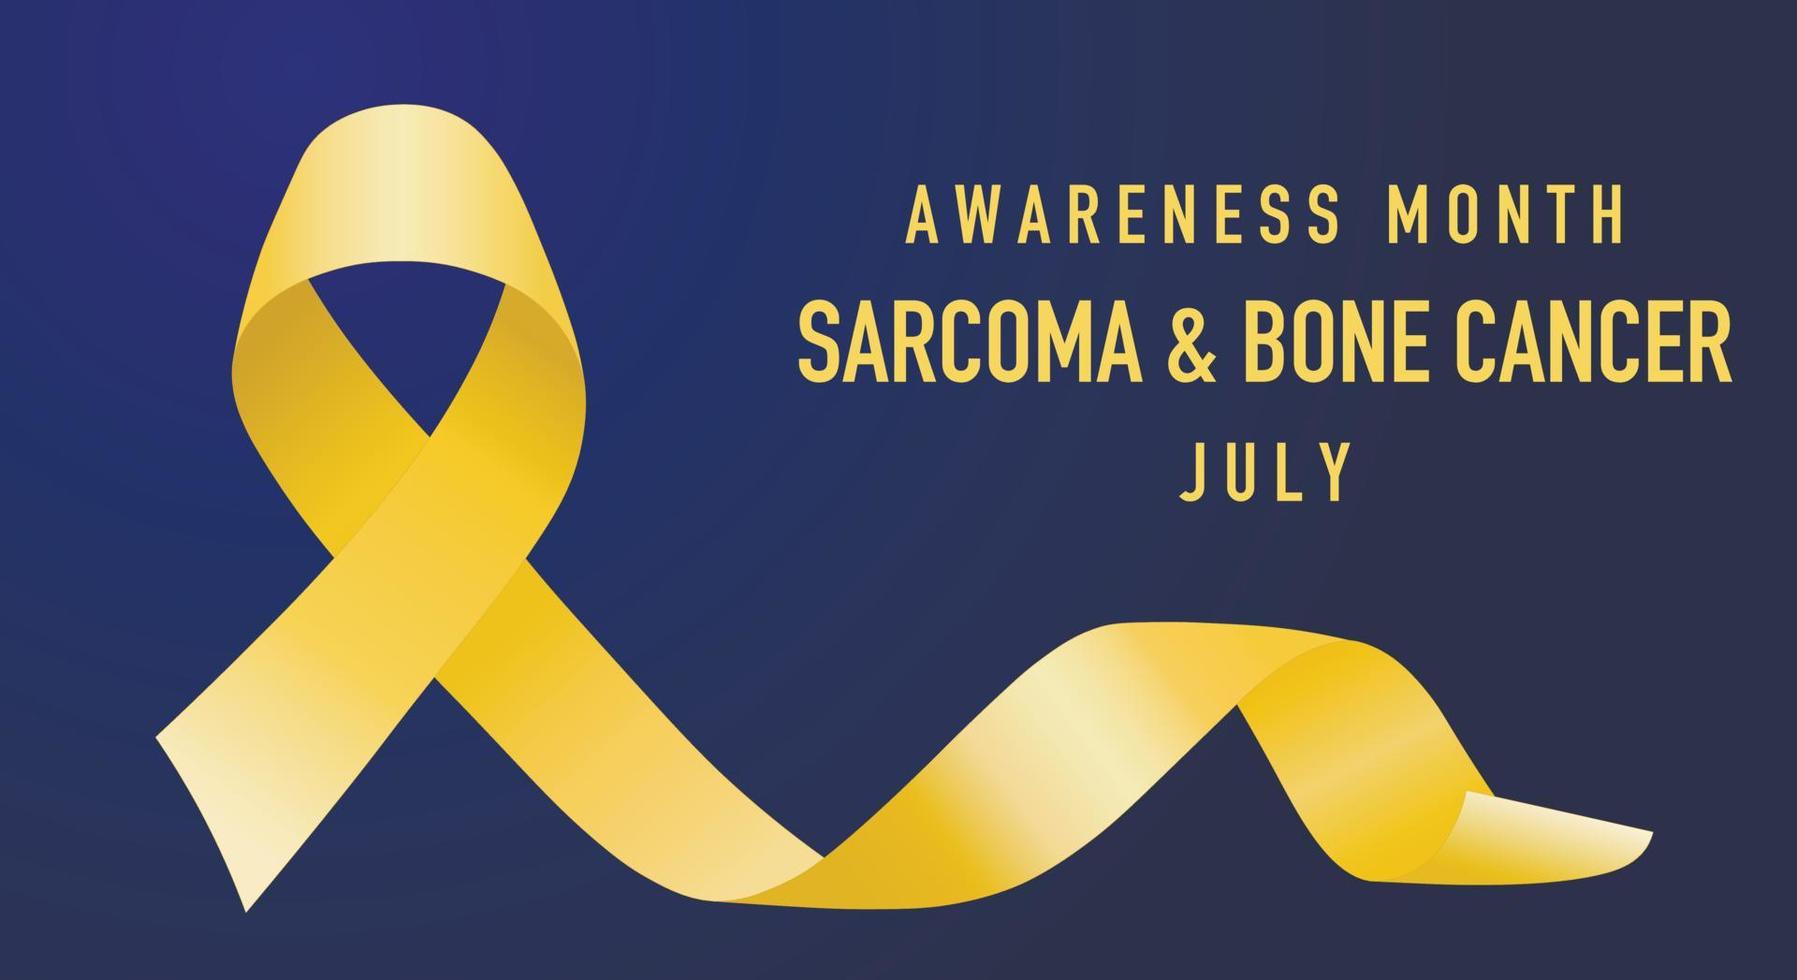 sarkom bencancer medvetenhet månad banner koncept firas varje juli. gult band på en blå bakgrund. vektor illustration